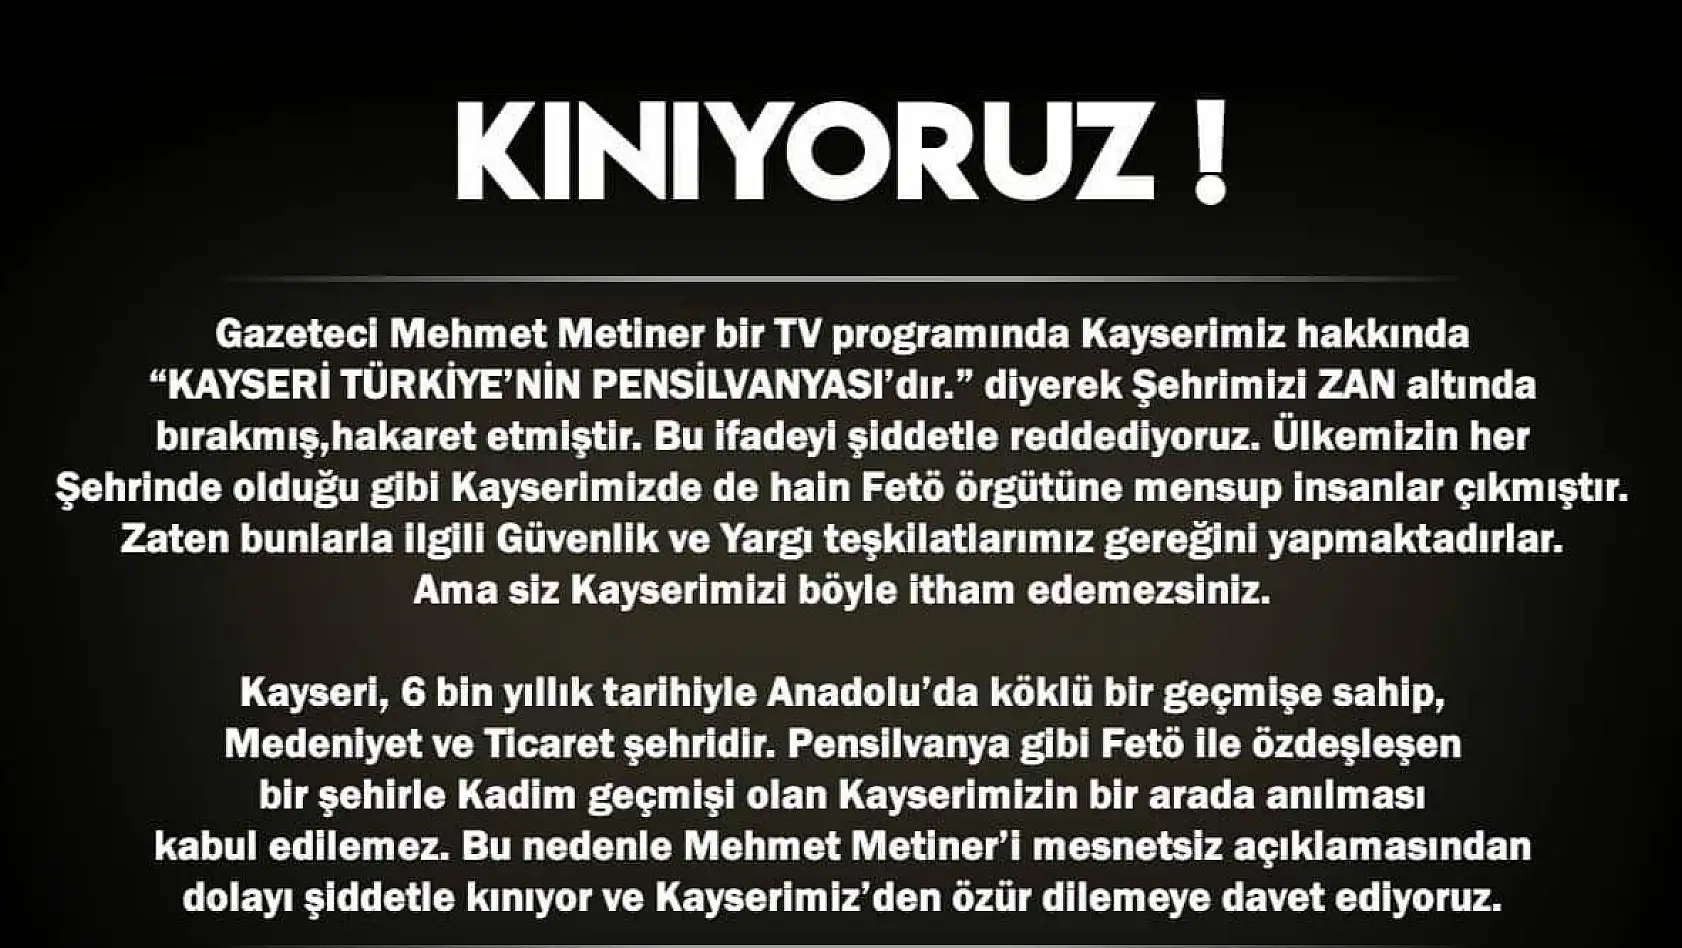 KAYFED'den AK Partili Metiner tepkisi:Kınıyoruz, özür dilemelidir 